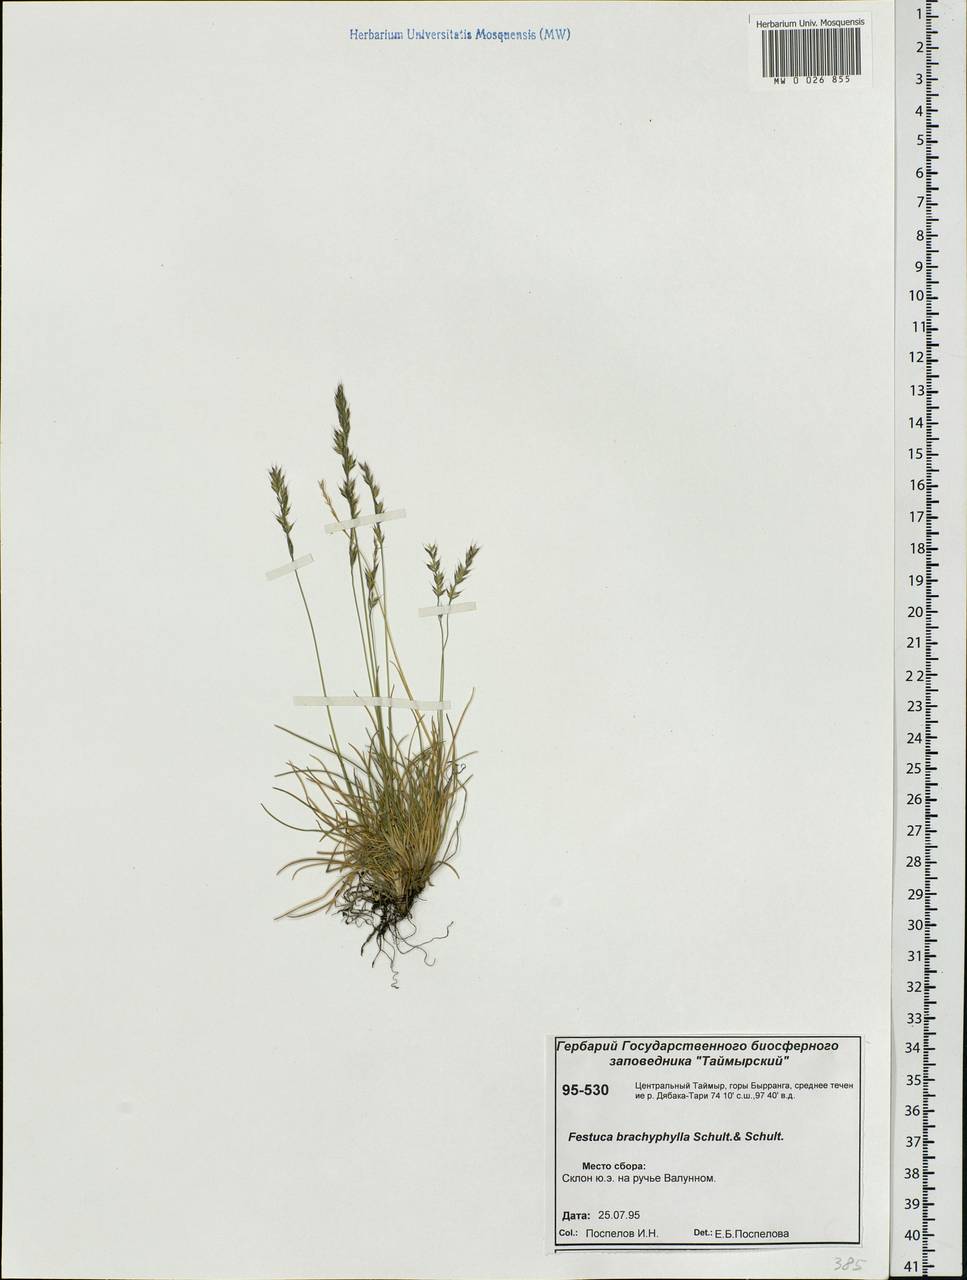 Festuca brachyphylla Schult. & Schult.f., Siberia, Central Siberia (S3) (Russia)